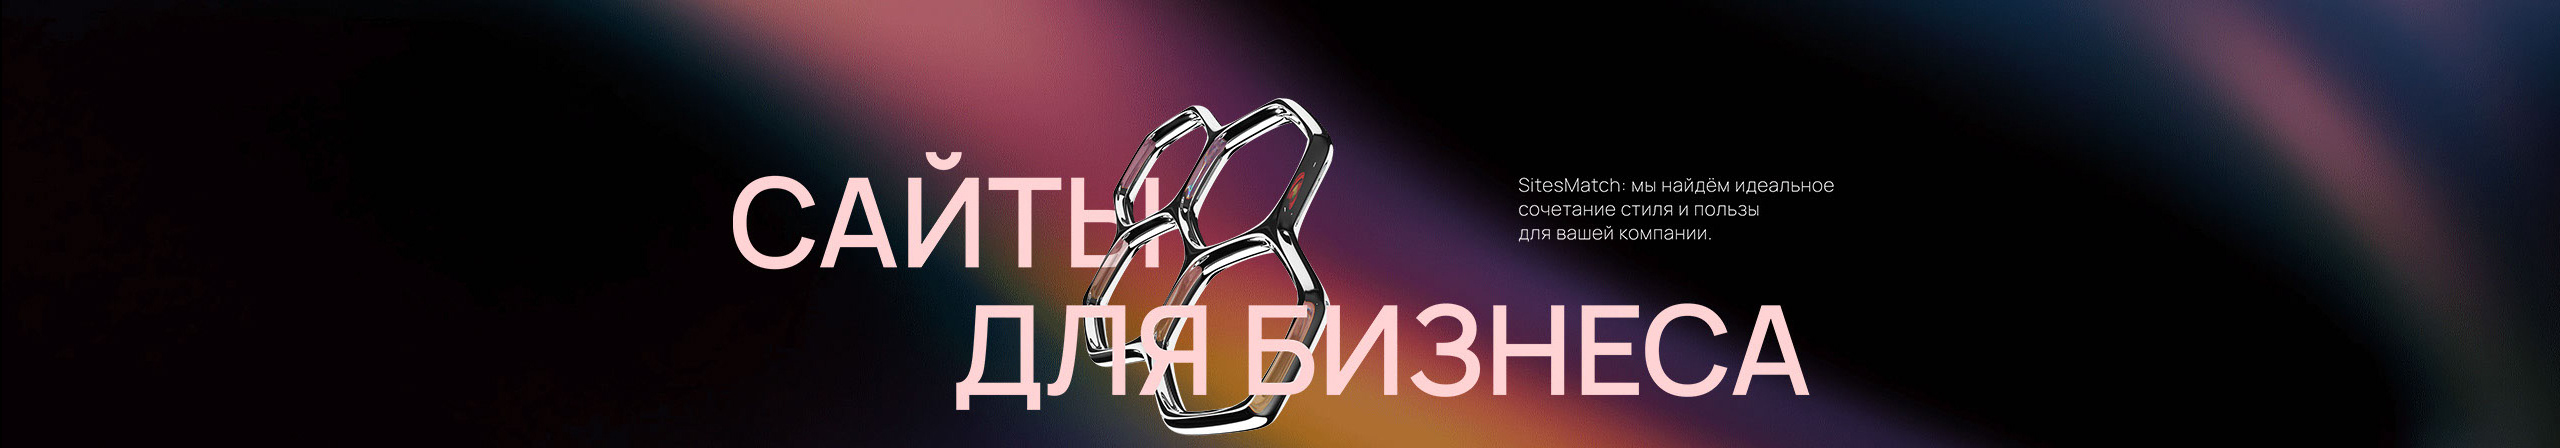 Илья Черняев's profile banner